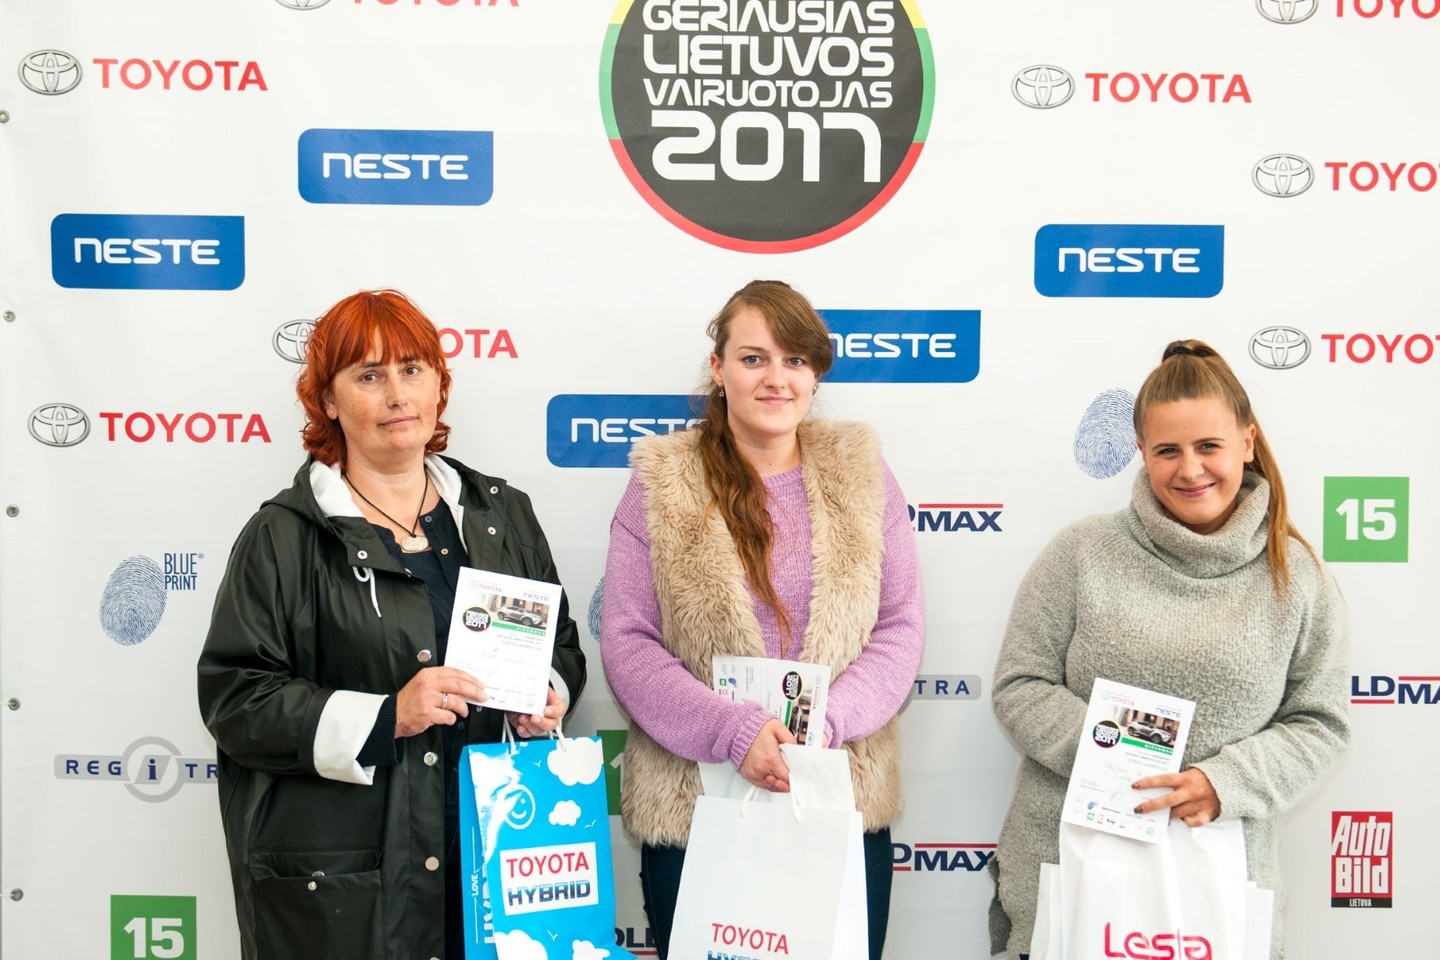  Į Panevėžį susirinko daugybė norinčiųjų pelnyti geriausio Lietuvos vairuotojo titulą.<br> Organizatorių nuotr.